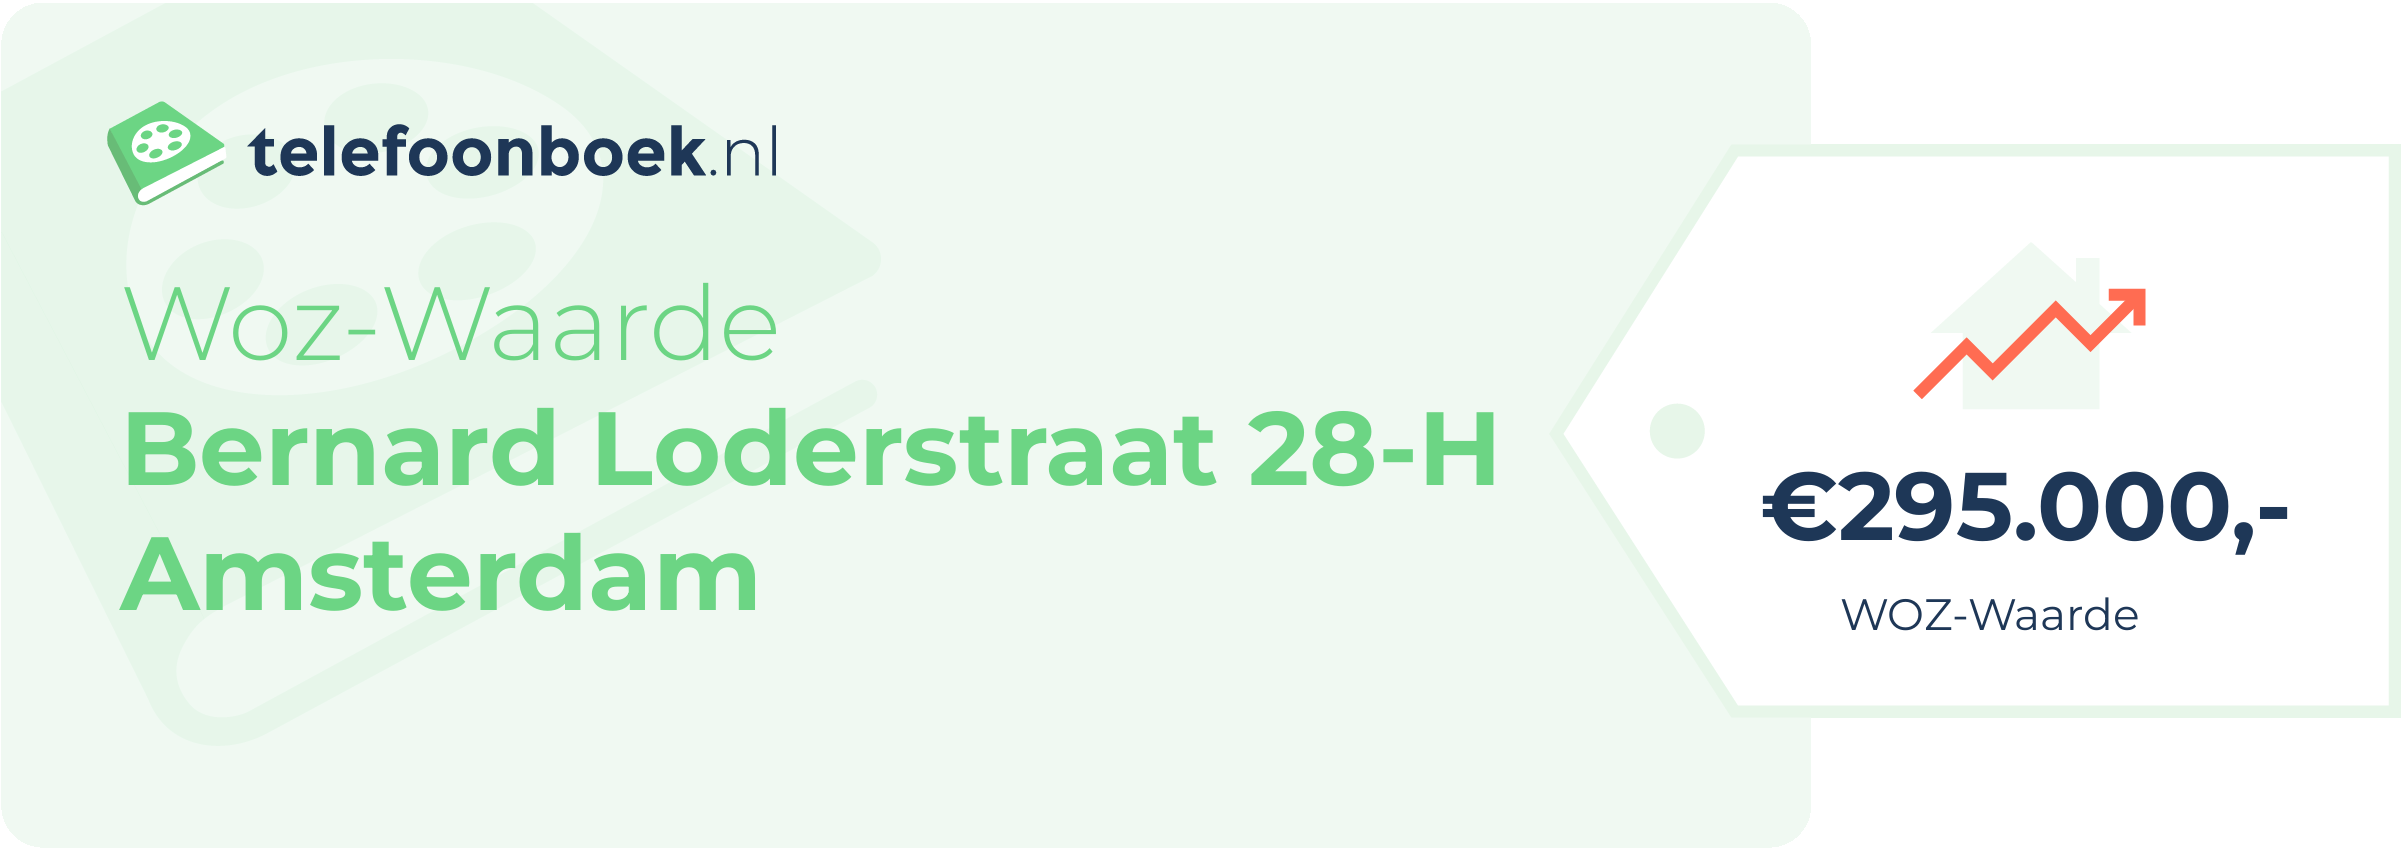 WOZ-waarde Bernard Loderstraat 28-H Amsterdam